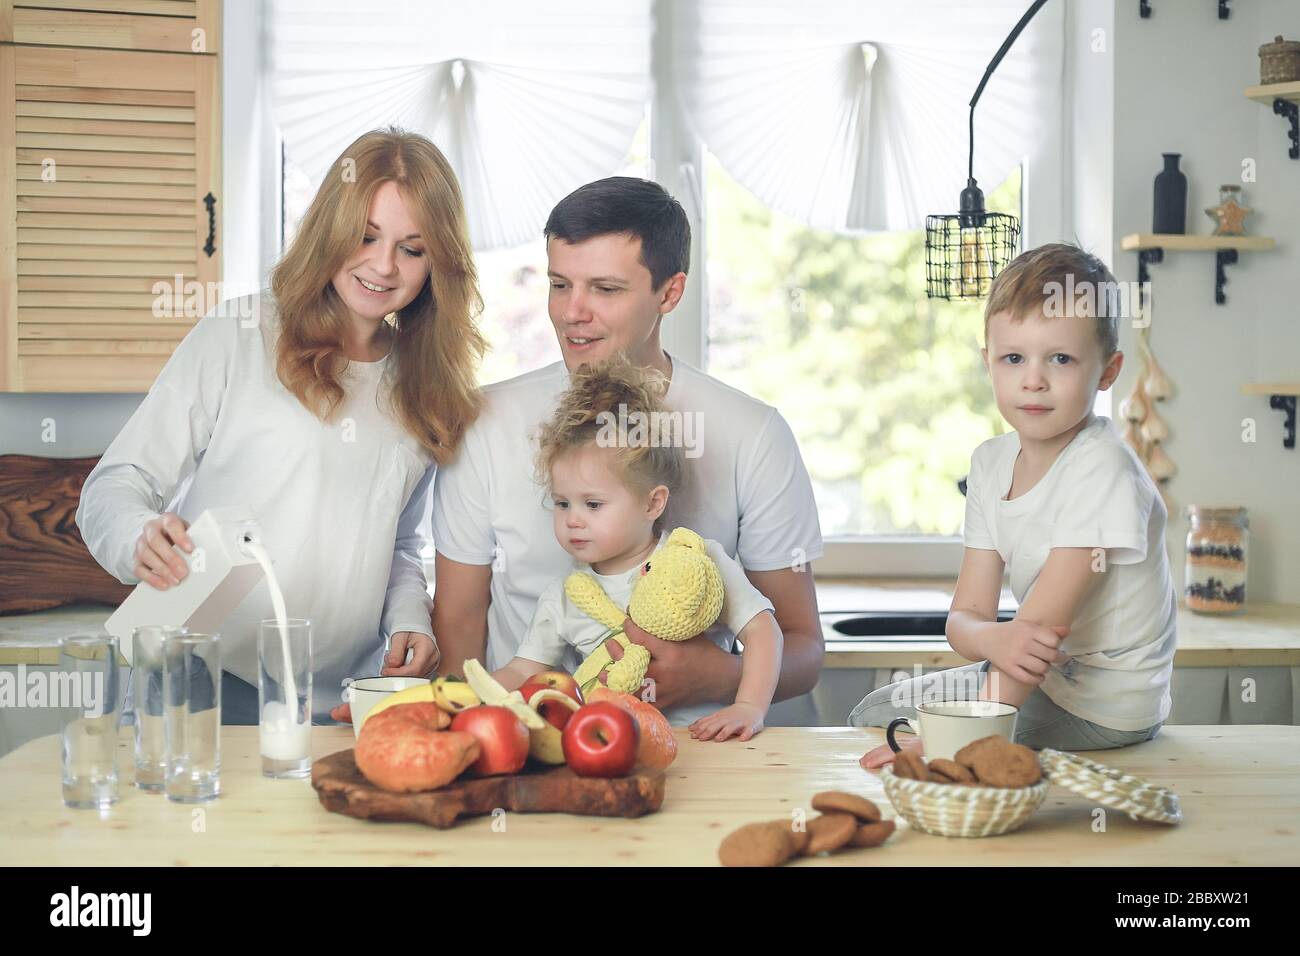 Glückliche Familienmutter, Vater, Tochter und Sohn, die zu Hause frühstücken. Mutter gießt Milch in ein Glas. Vitaminfrühstück im hellen Küchenraum Stockfoto